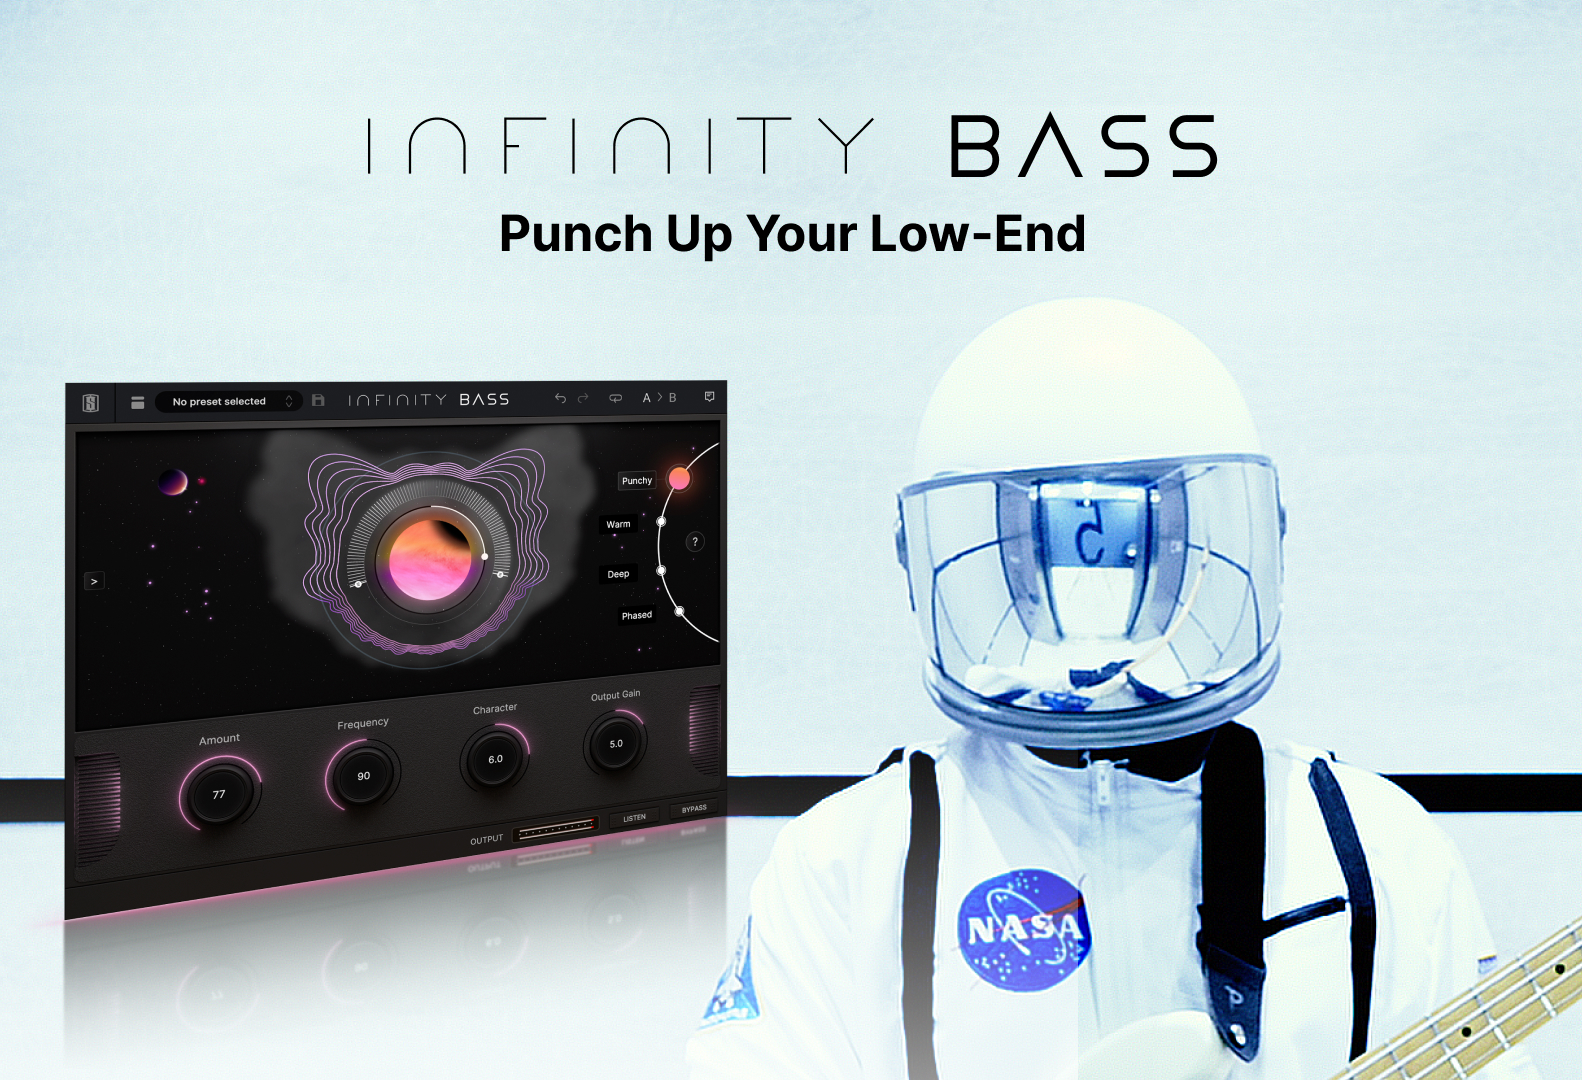 Meet Infinity Bass